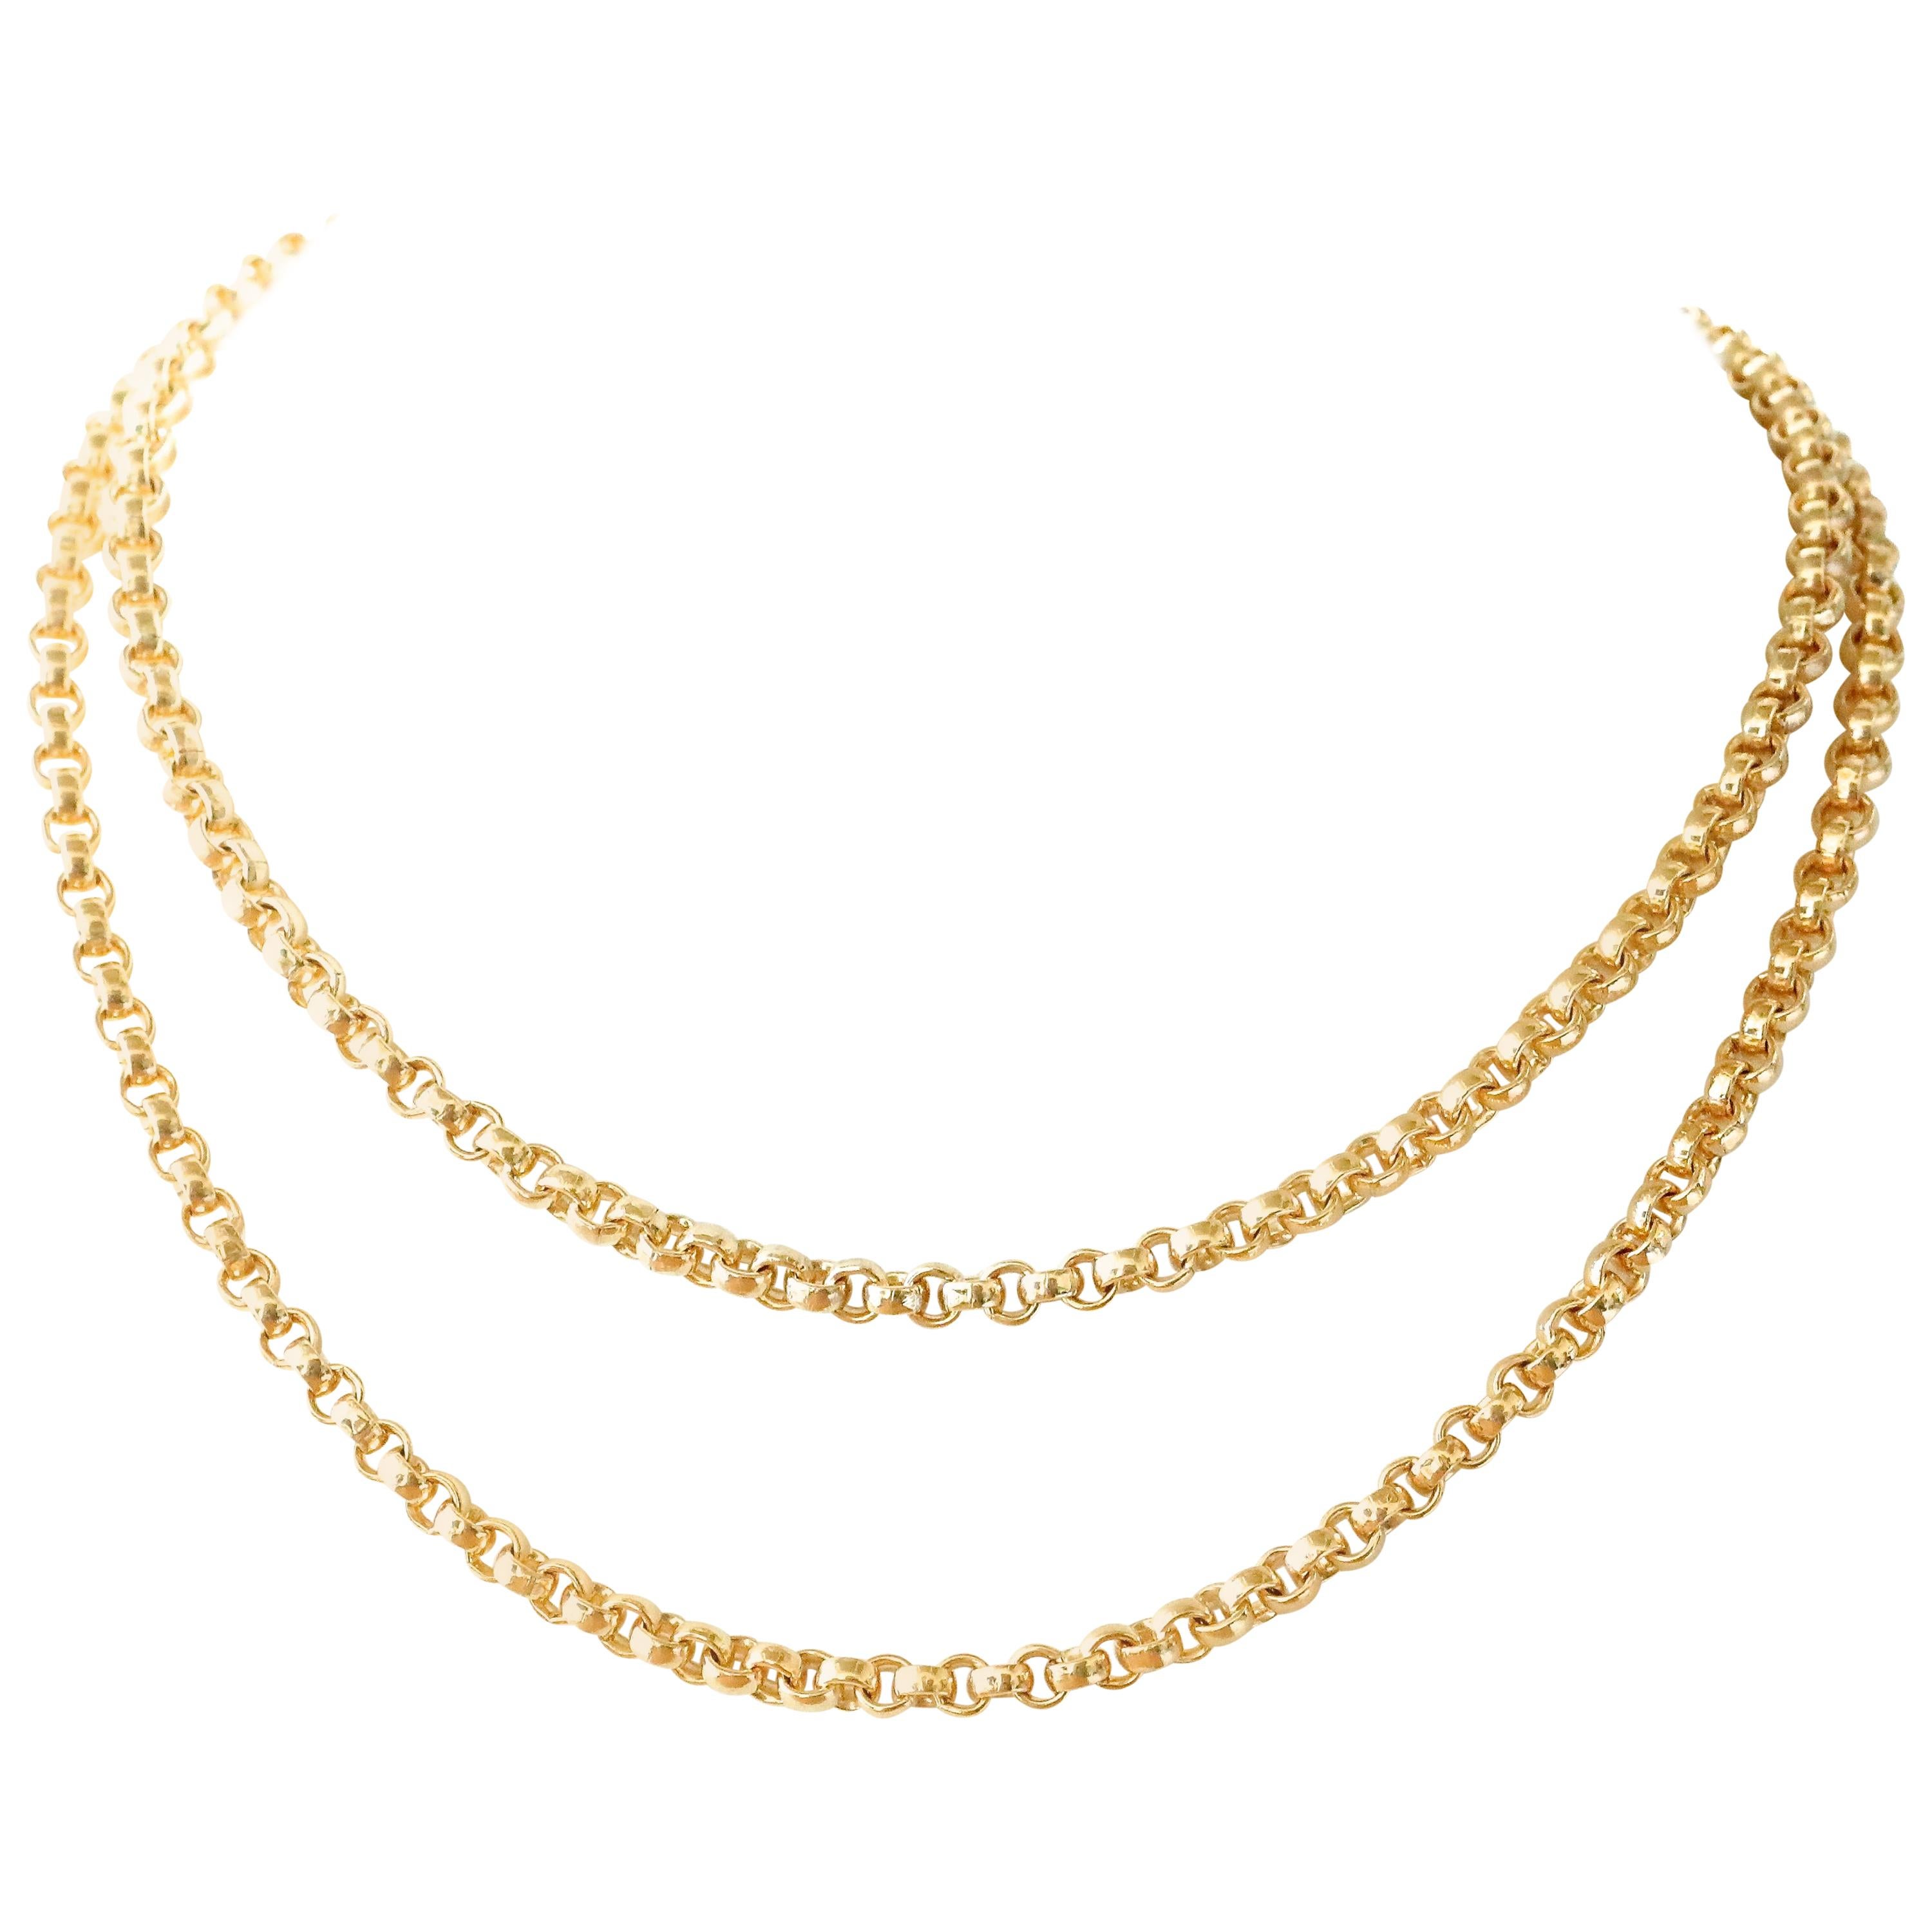 Belcher Link 14 Karat Gold Chain